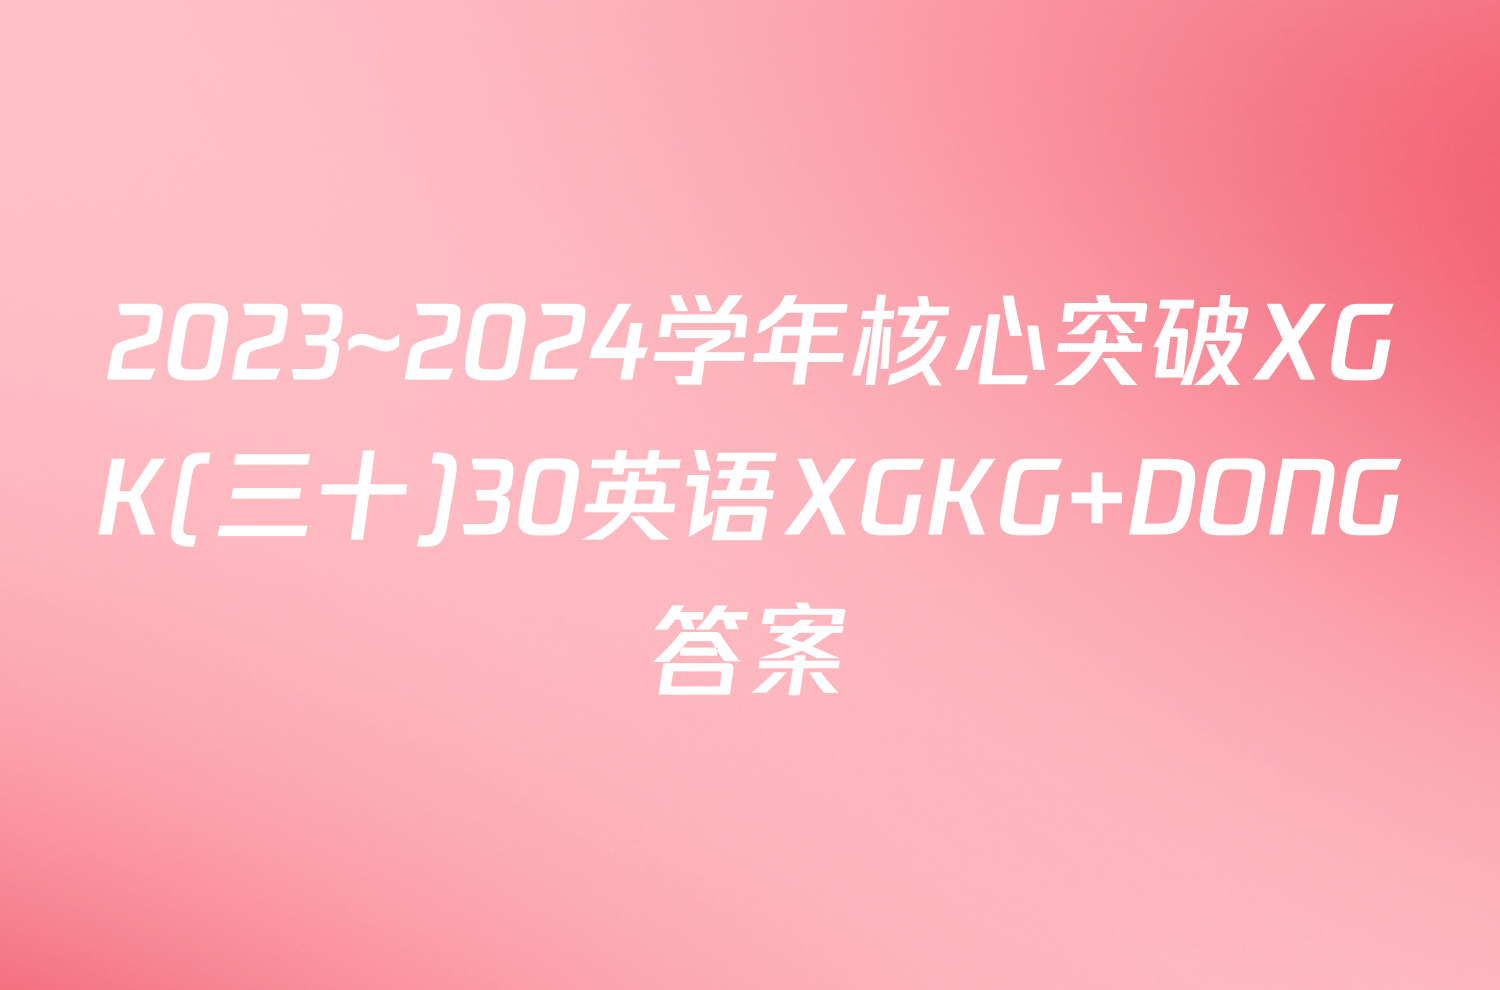 2023~2024学年核心突破XGK(三十)30英语XGKG DONG答案